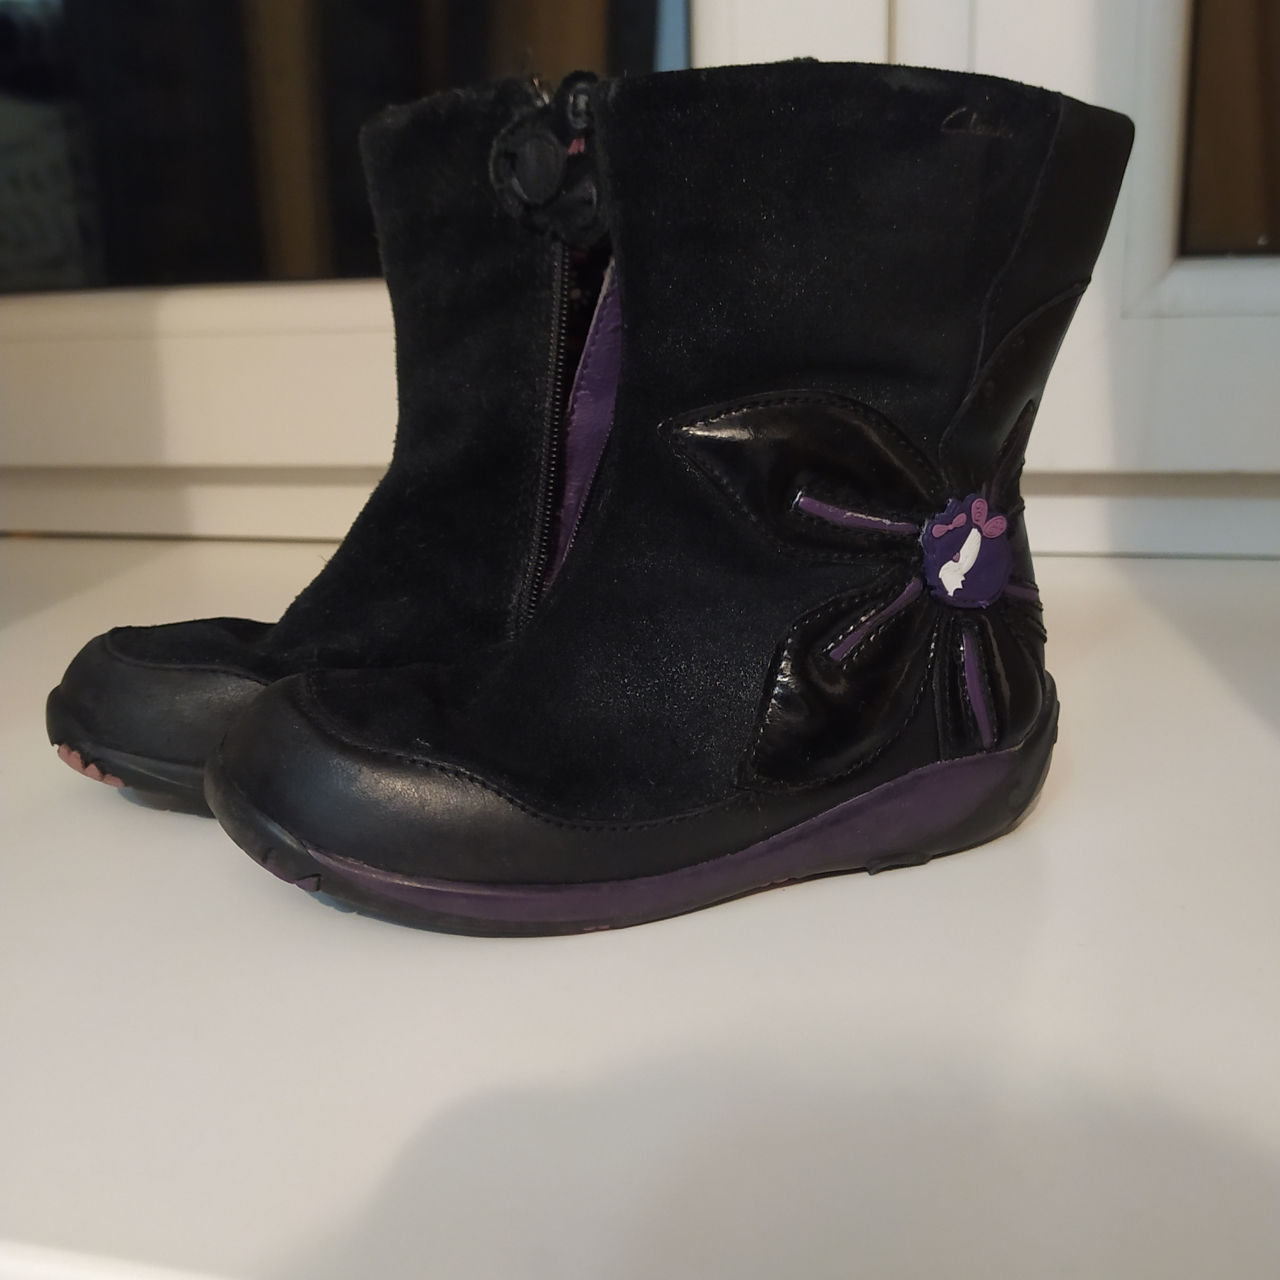 Обувь на осень 25, 27, 28 размер: кроссовки, ботинки, сапожки foto 6